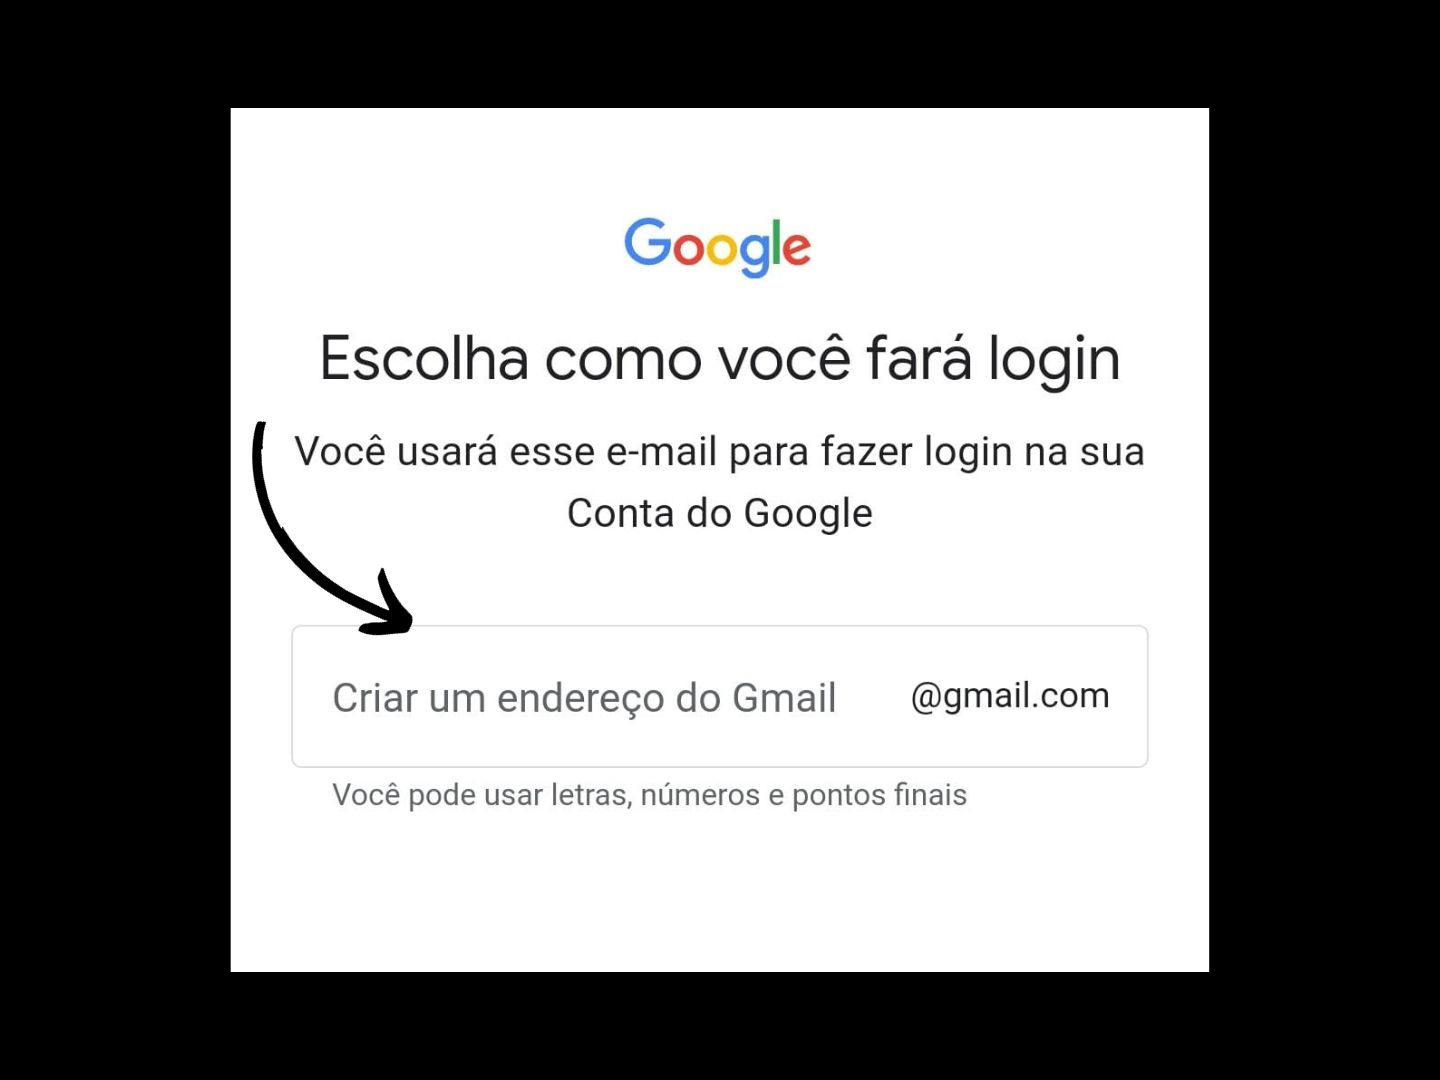 Imagem mostra uma seta apontando onde você deve criar a forma que fará seu login para criar uma conta no Google